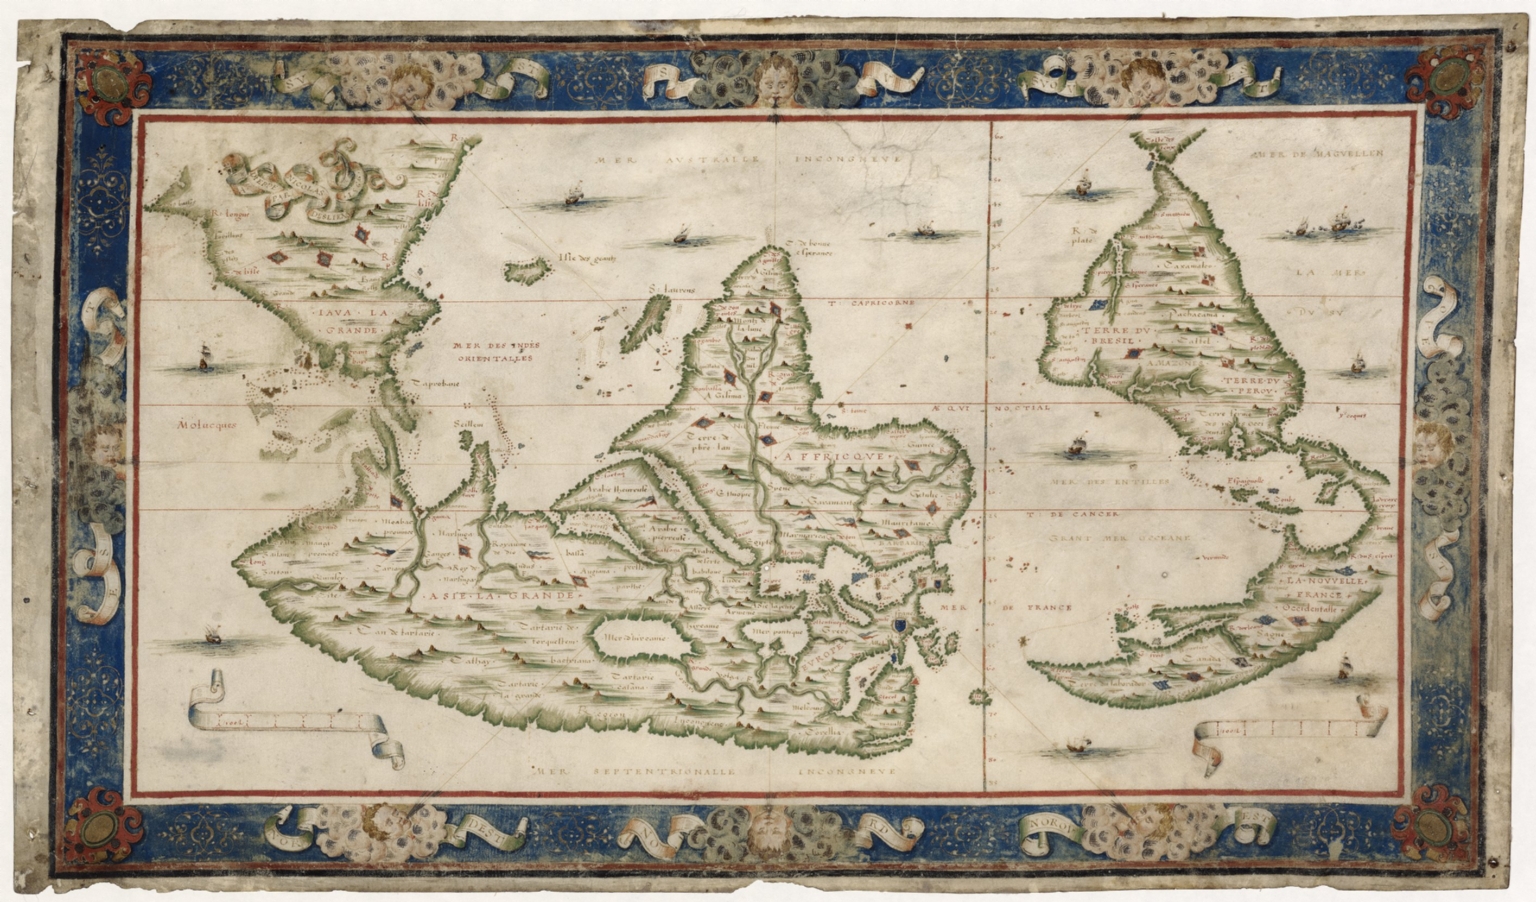 Planisphère / A Dieppe par Nicolas Desliens, 1566